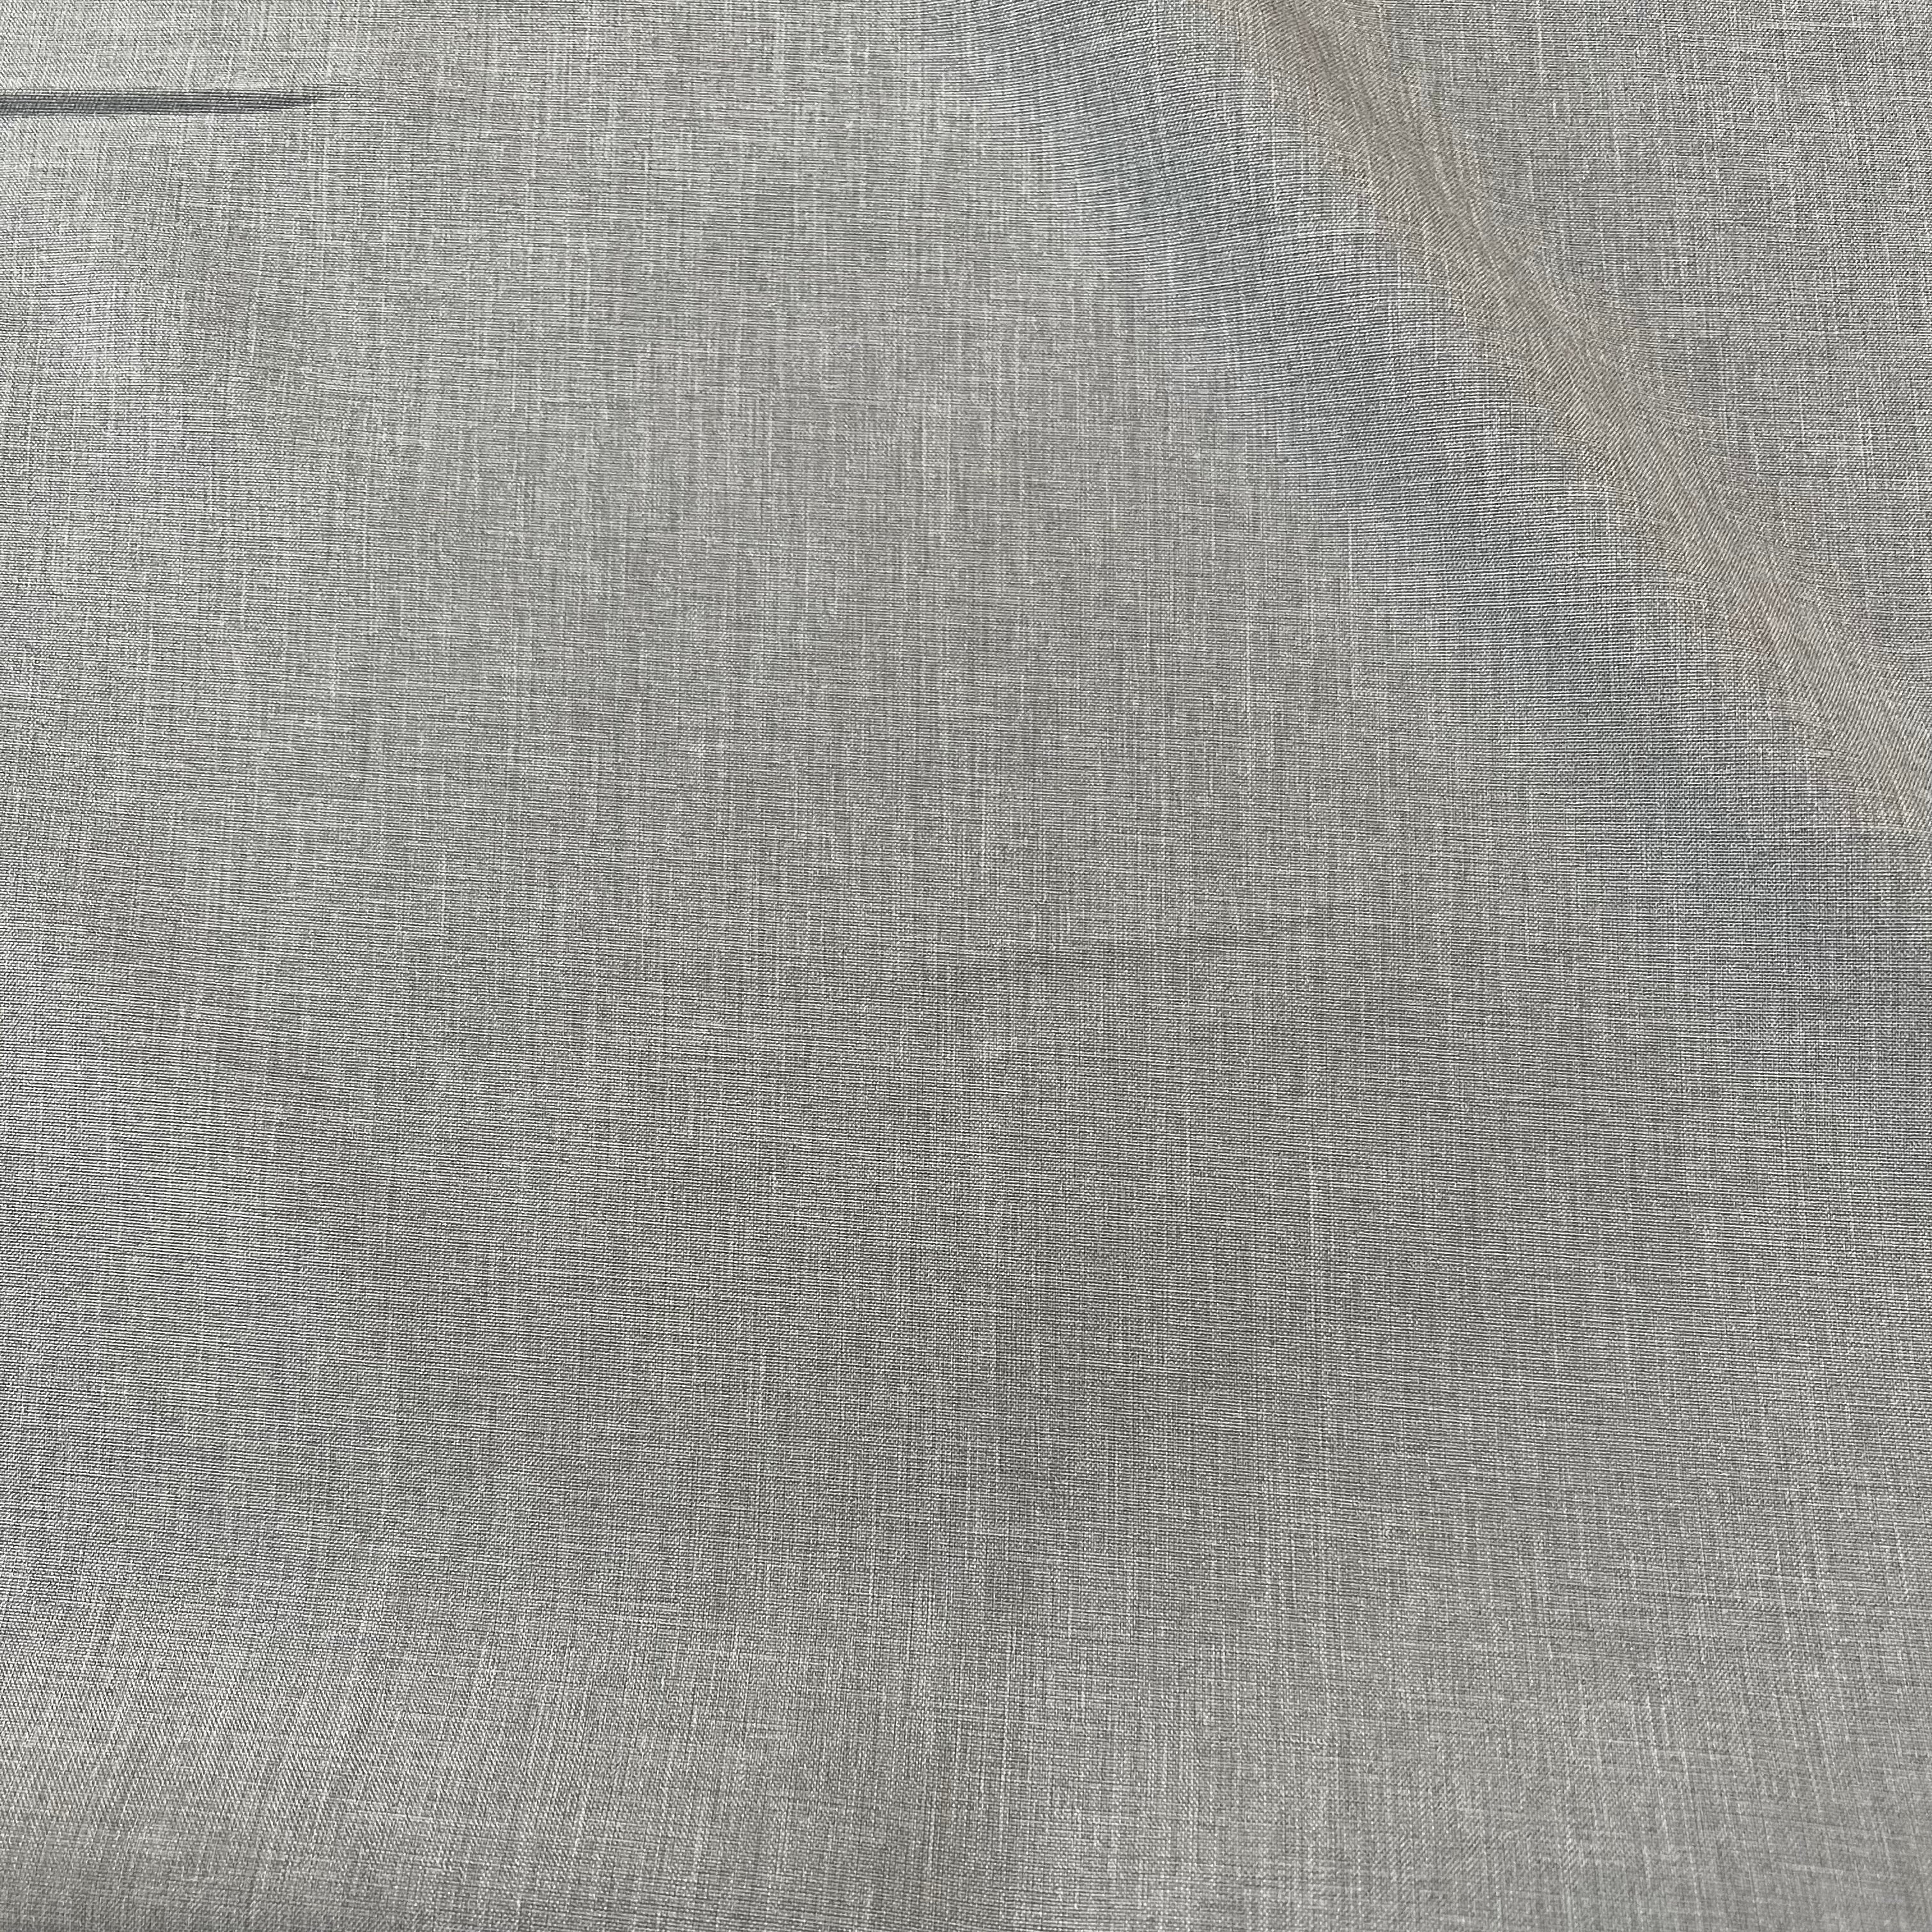 Stretch Woven - Light Grey Linen Look